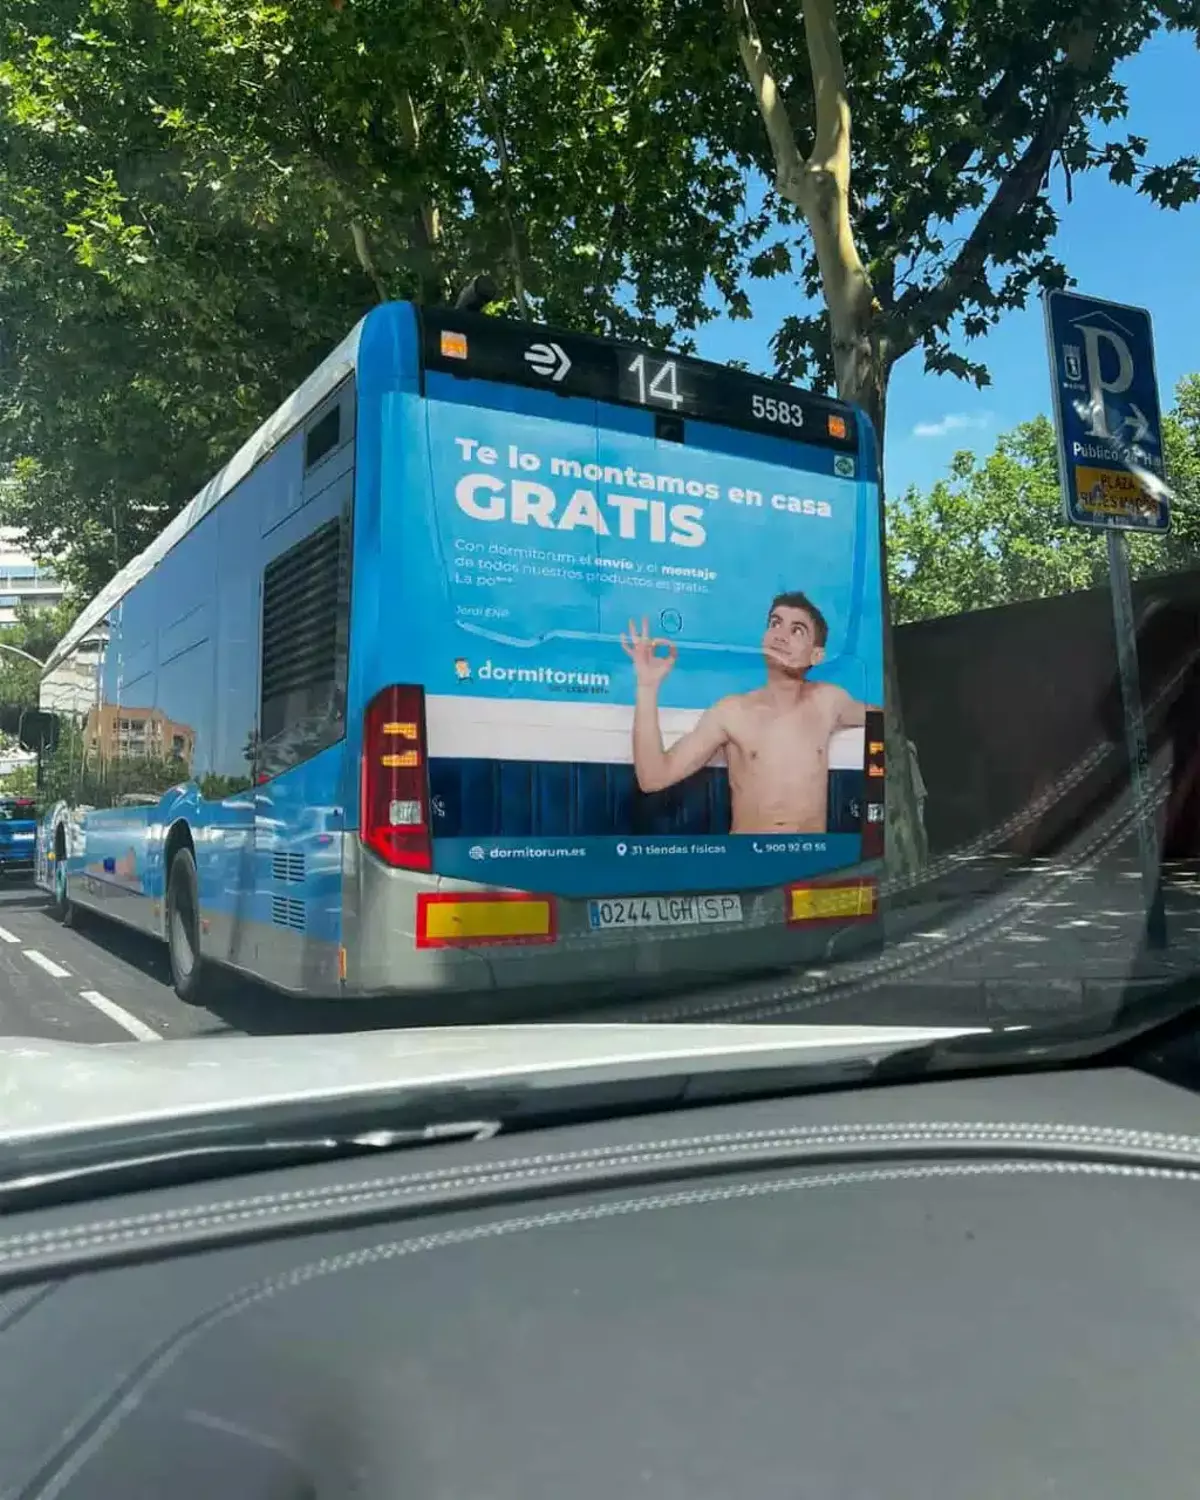 La campaña publicitaria en una guagua de Madrid